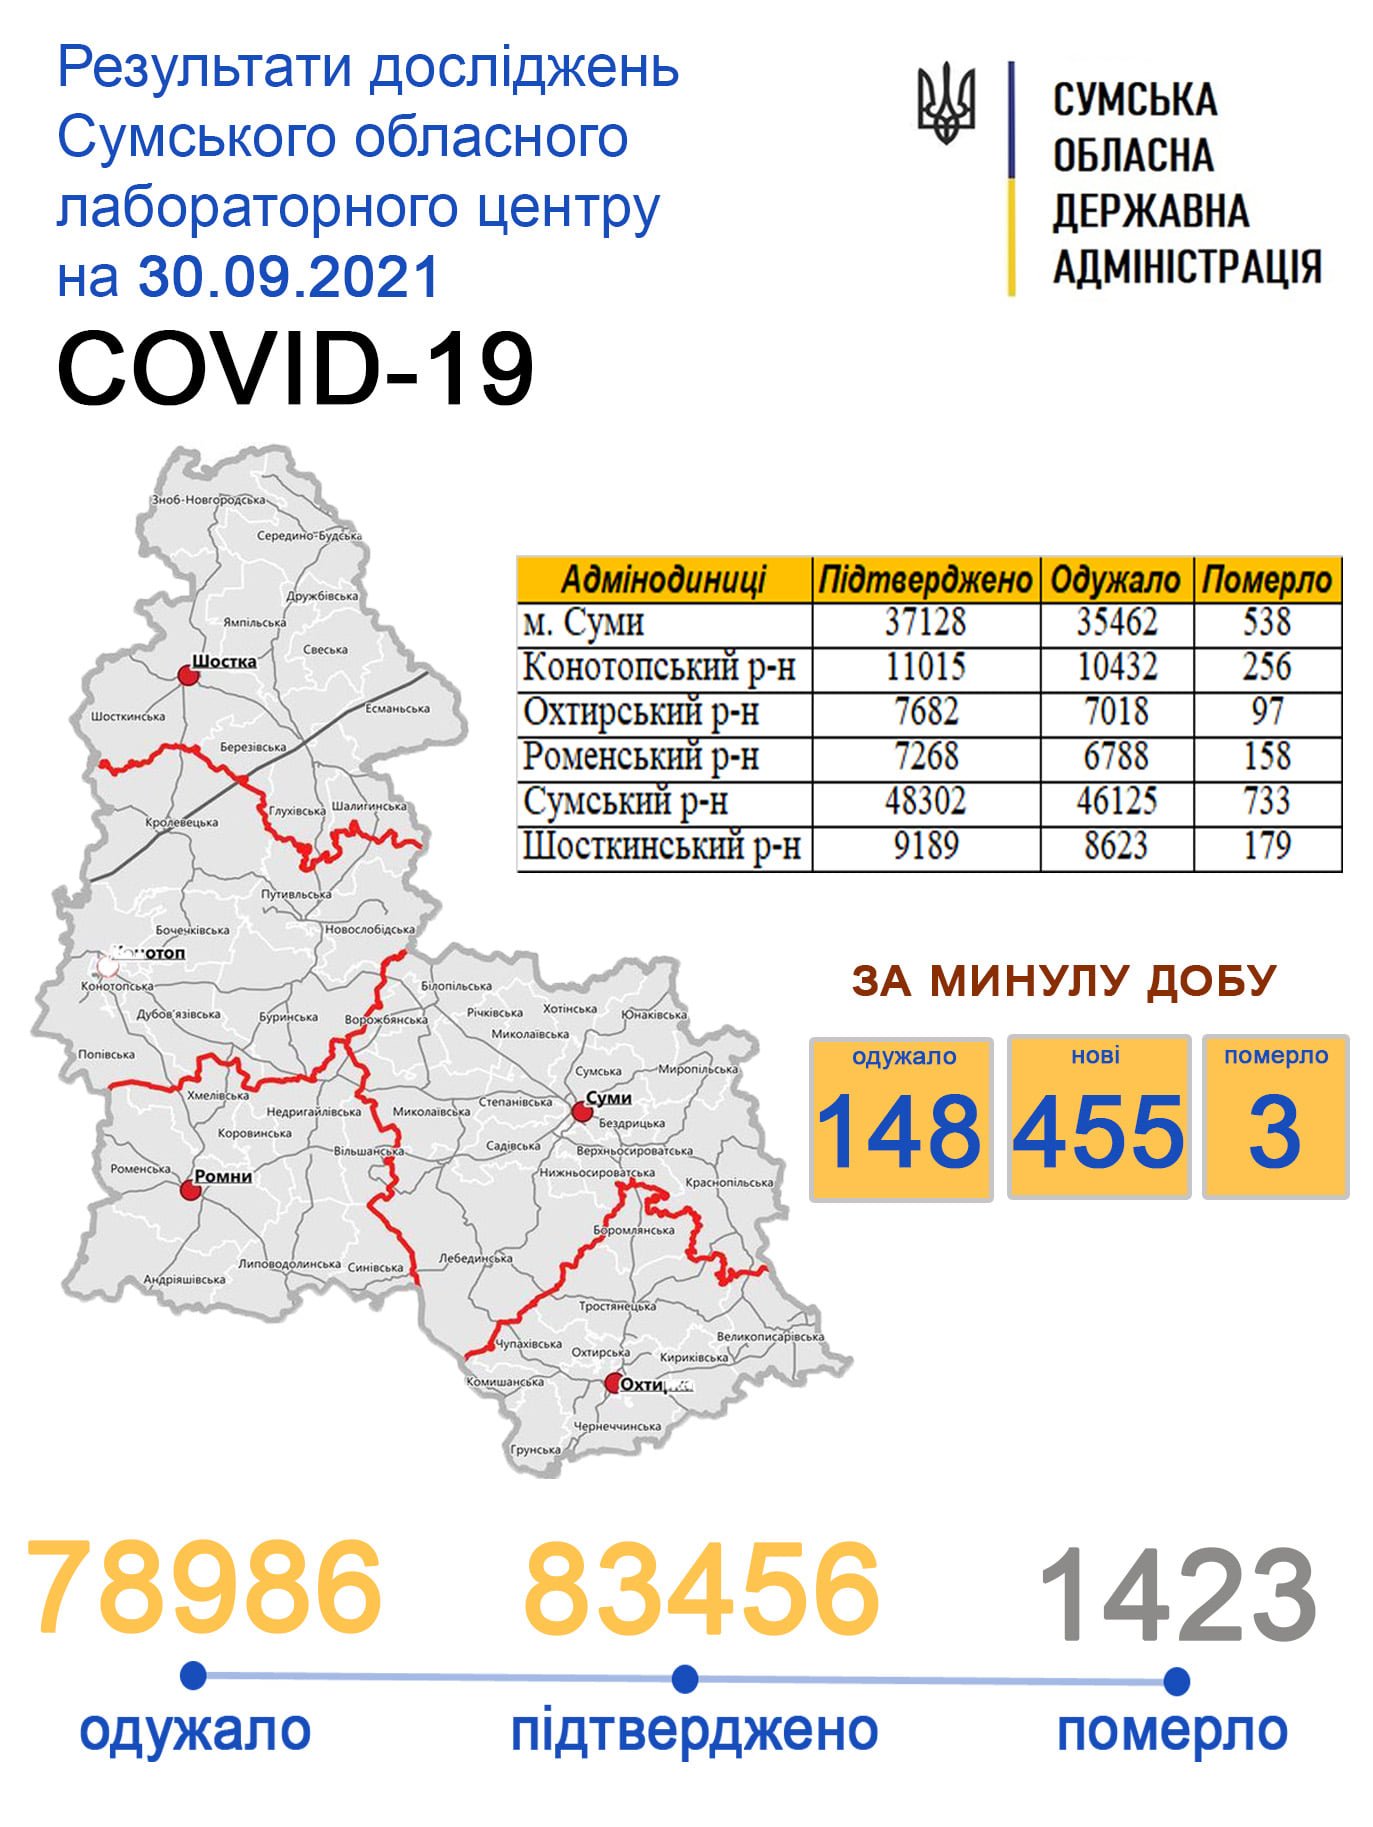    covid-19  455   